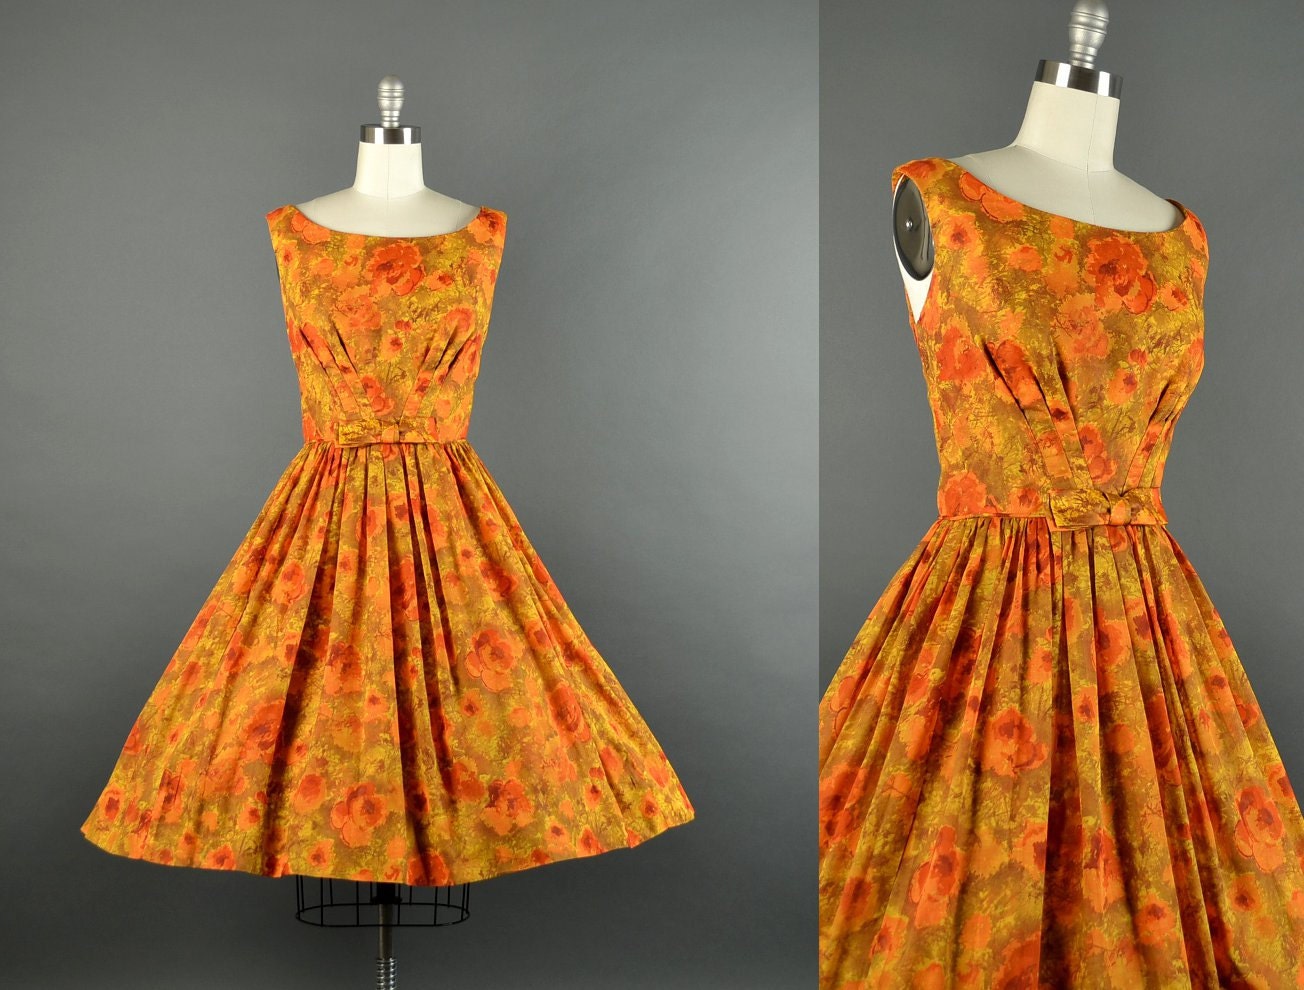 1950s autumn bloom dress / floral full skirt dress / 50s dress / cotton dress